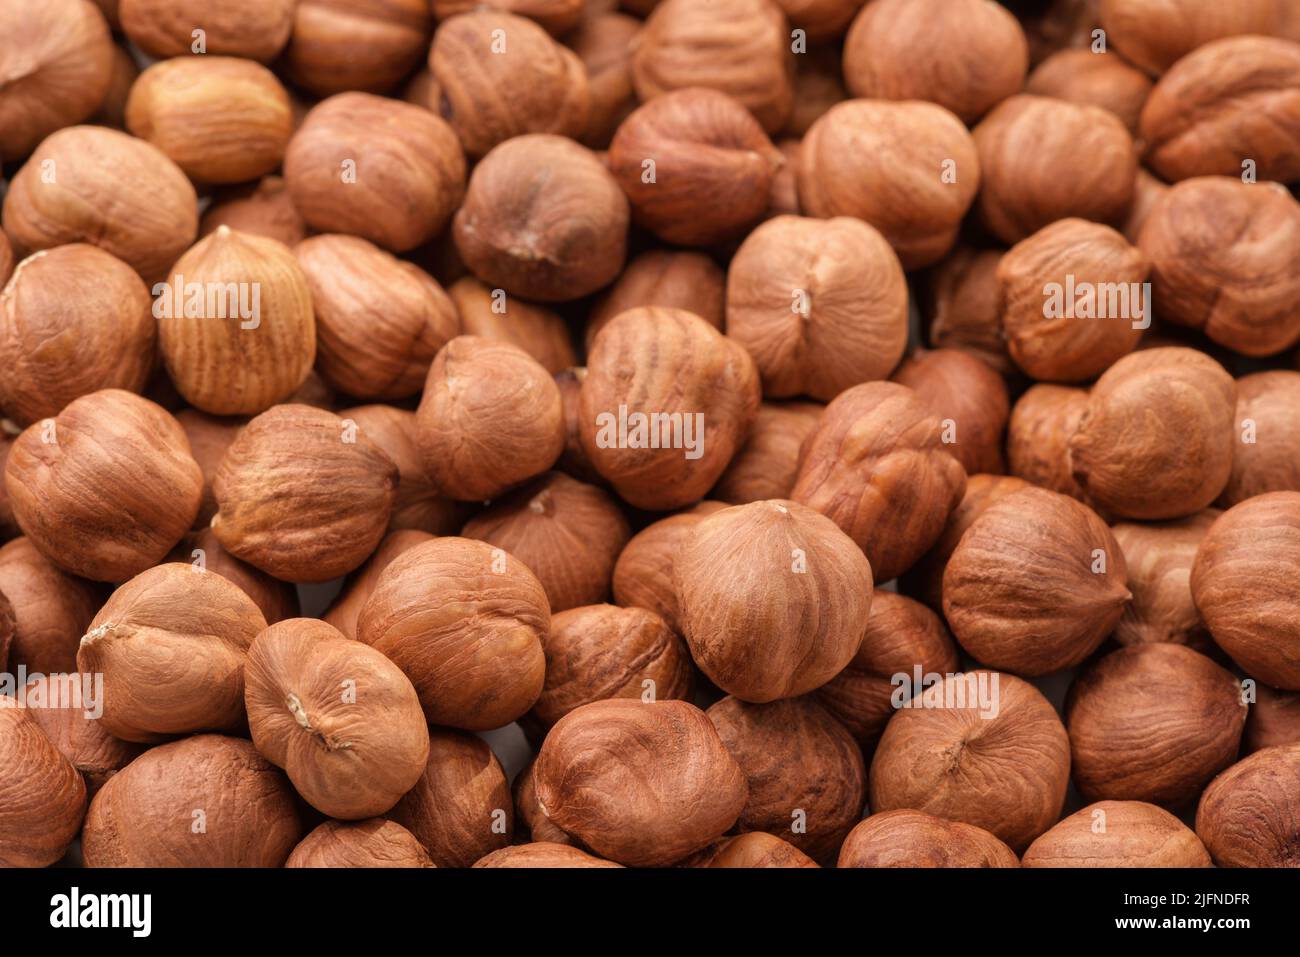 Close up of shelled hazelnut kernels Stock Photo